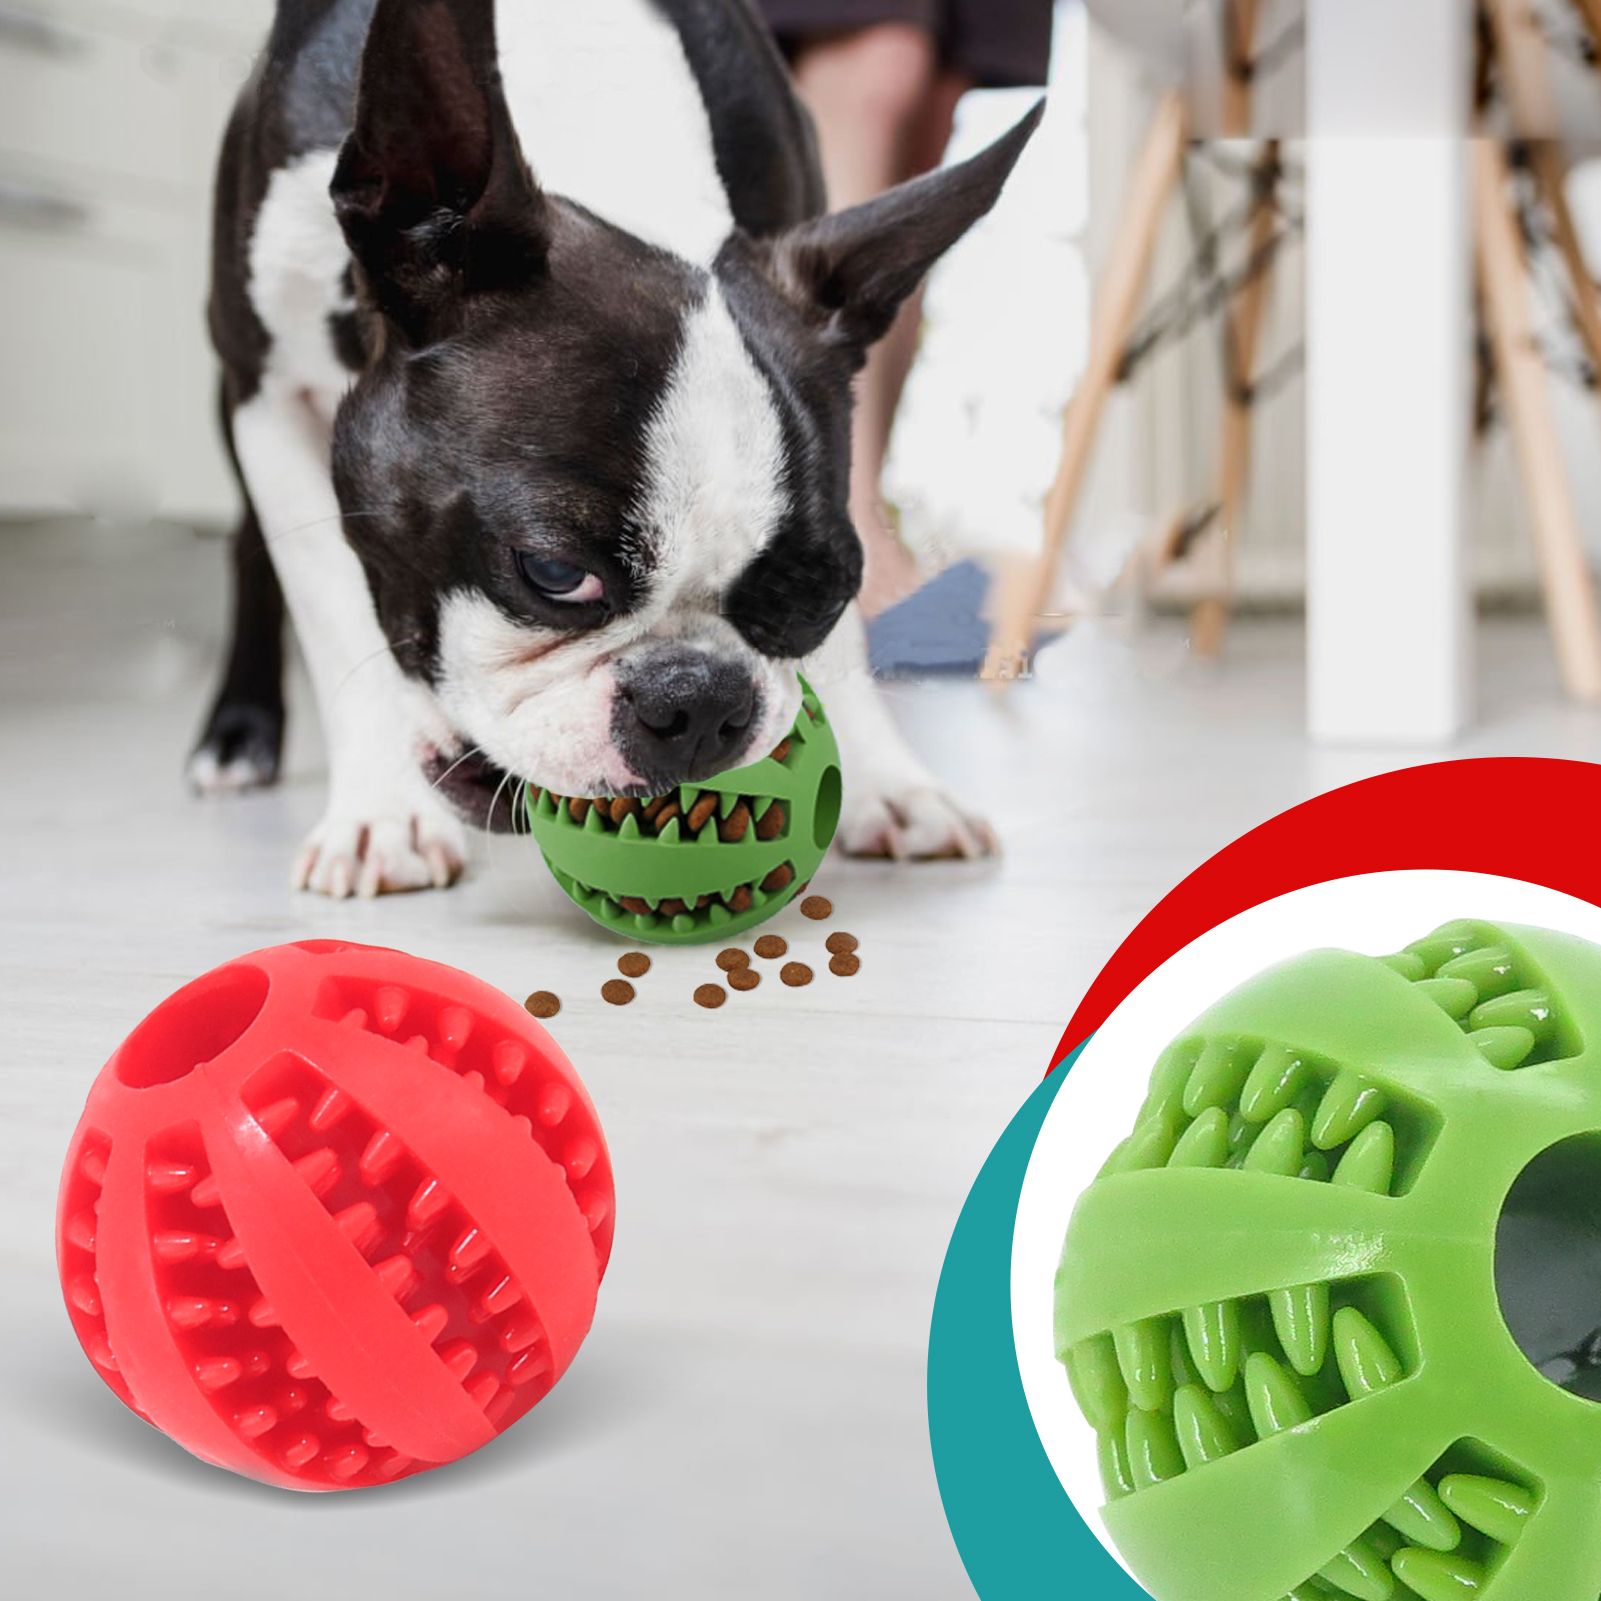 كرة لعب لتسنين الكلاب بالجملة 2 حبة متوفرة في المخزون